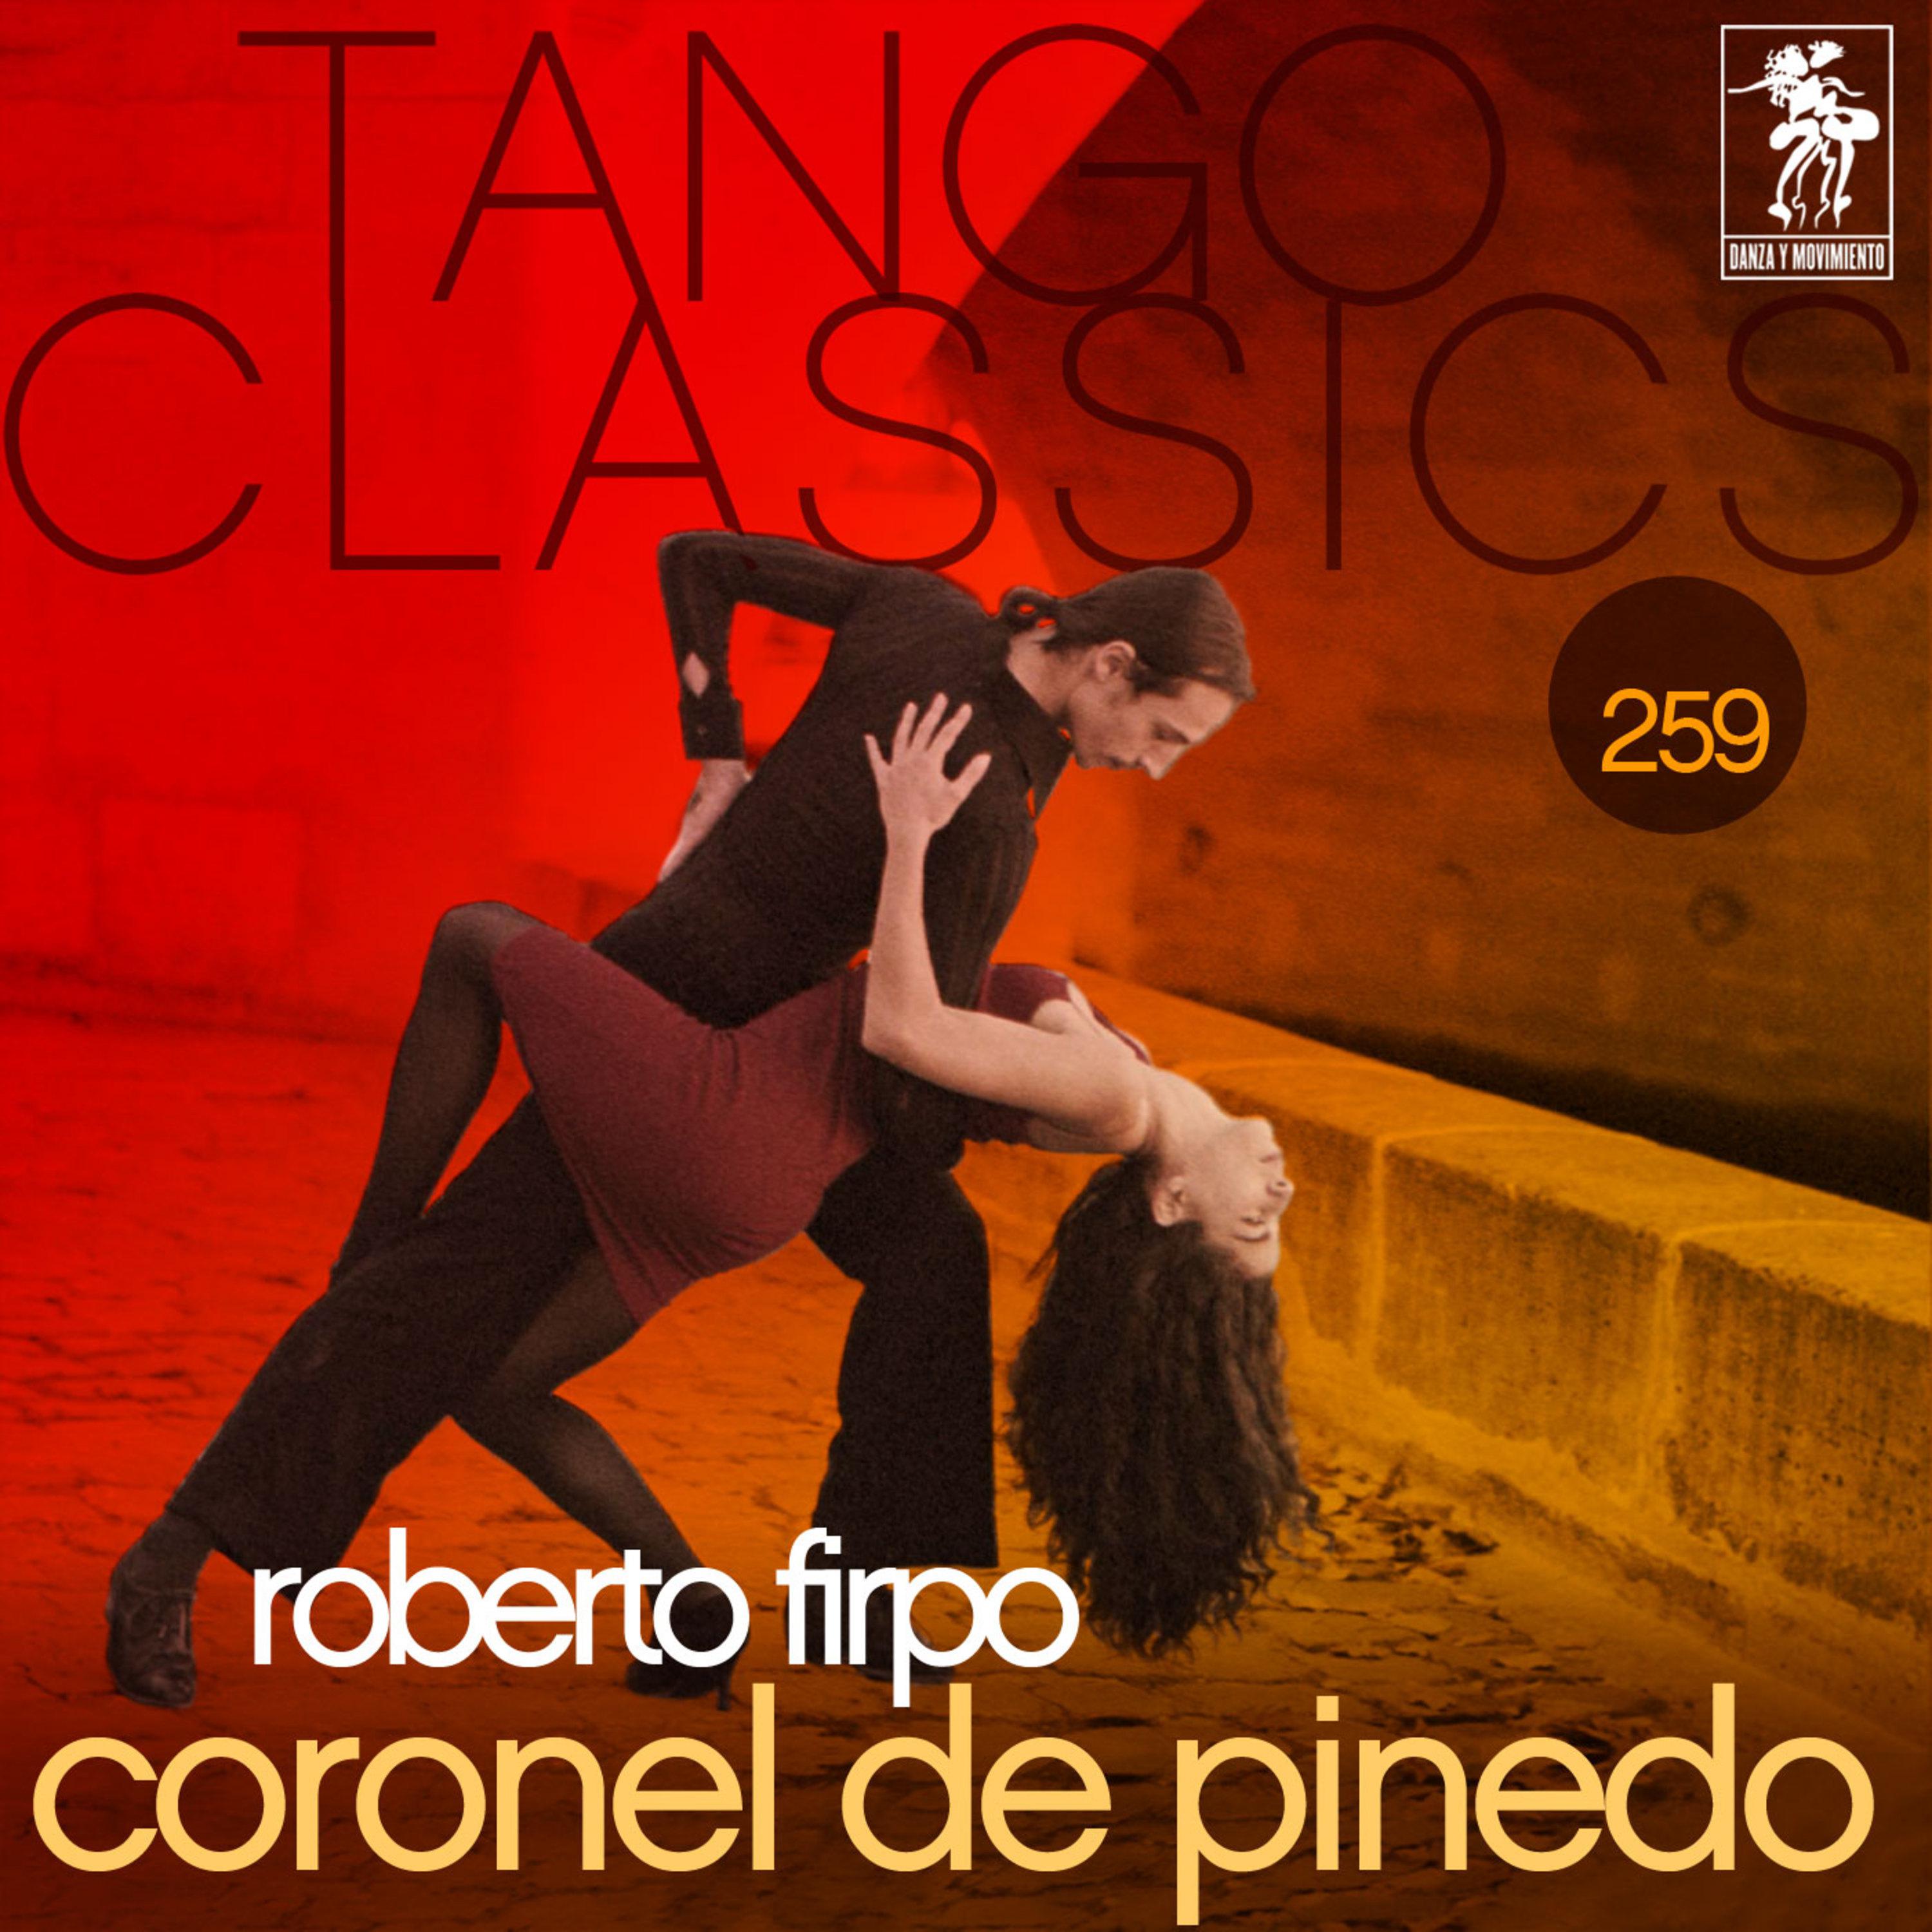 Tango Classics 259: Coronel de Pinedo